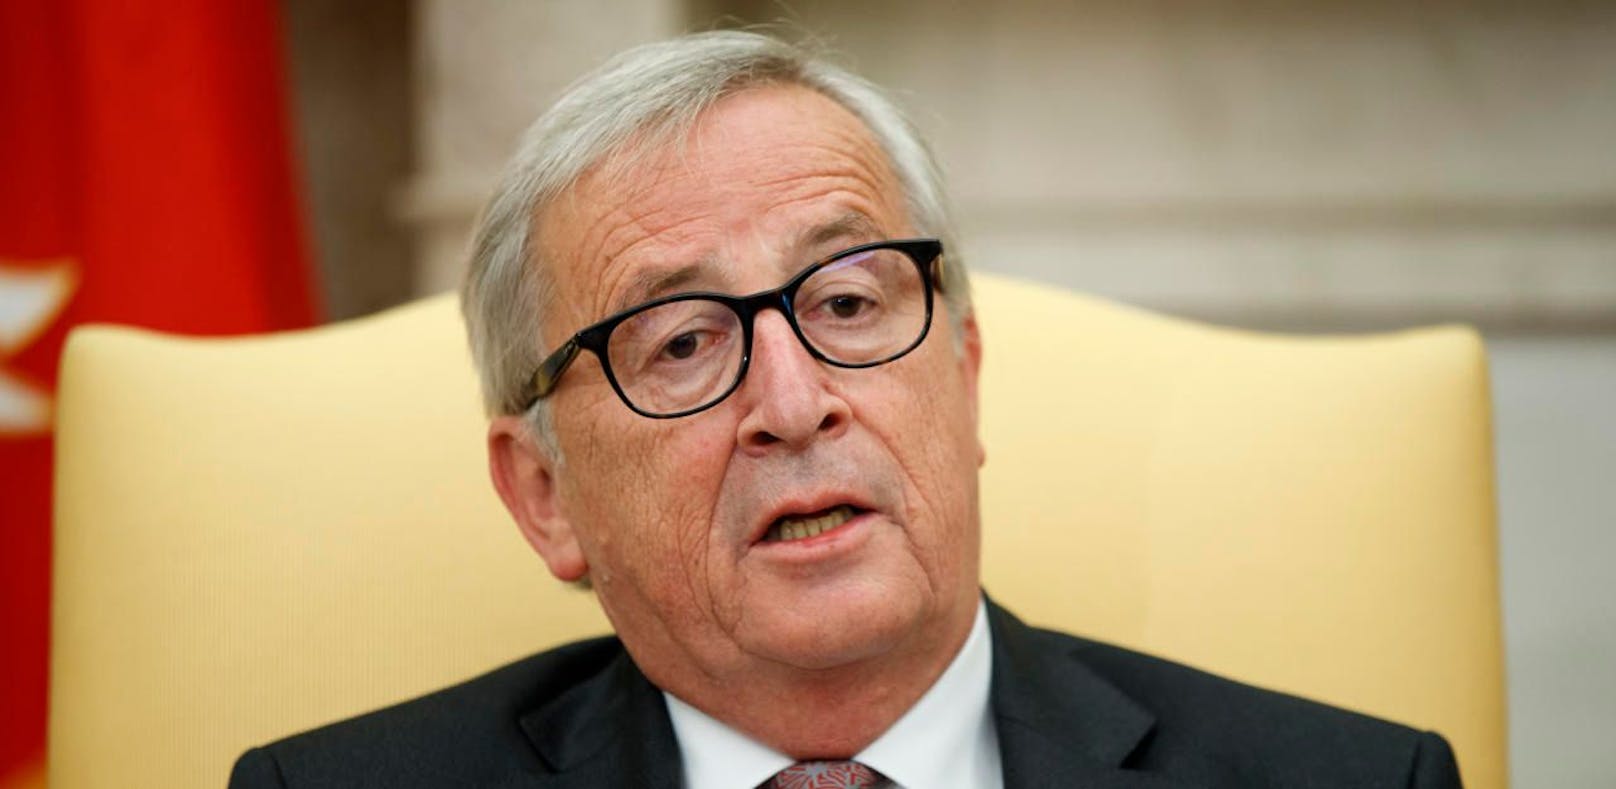 EU-Chef Juncker: "Vilimsky kenne ich nicht"